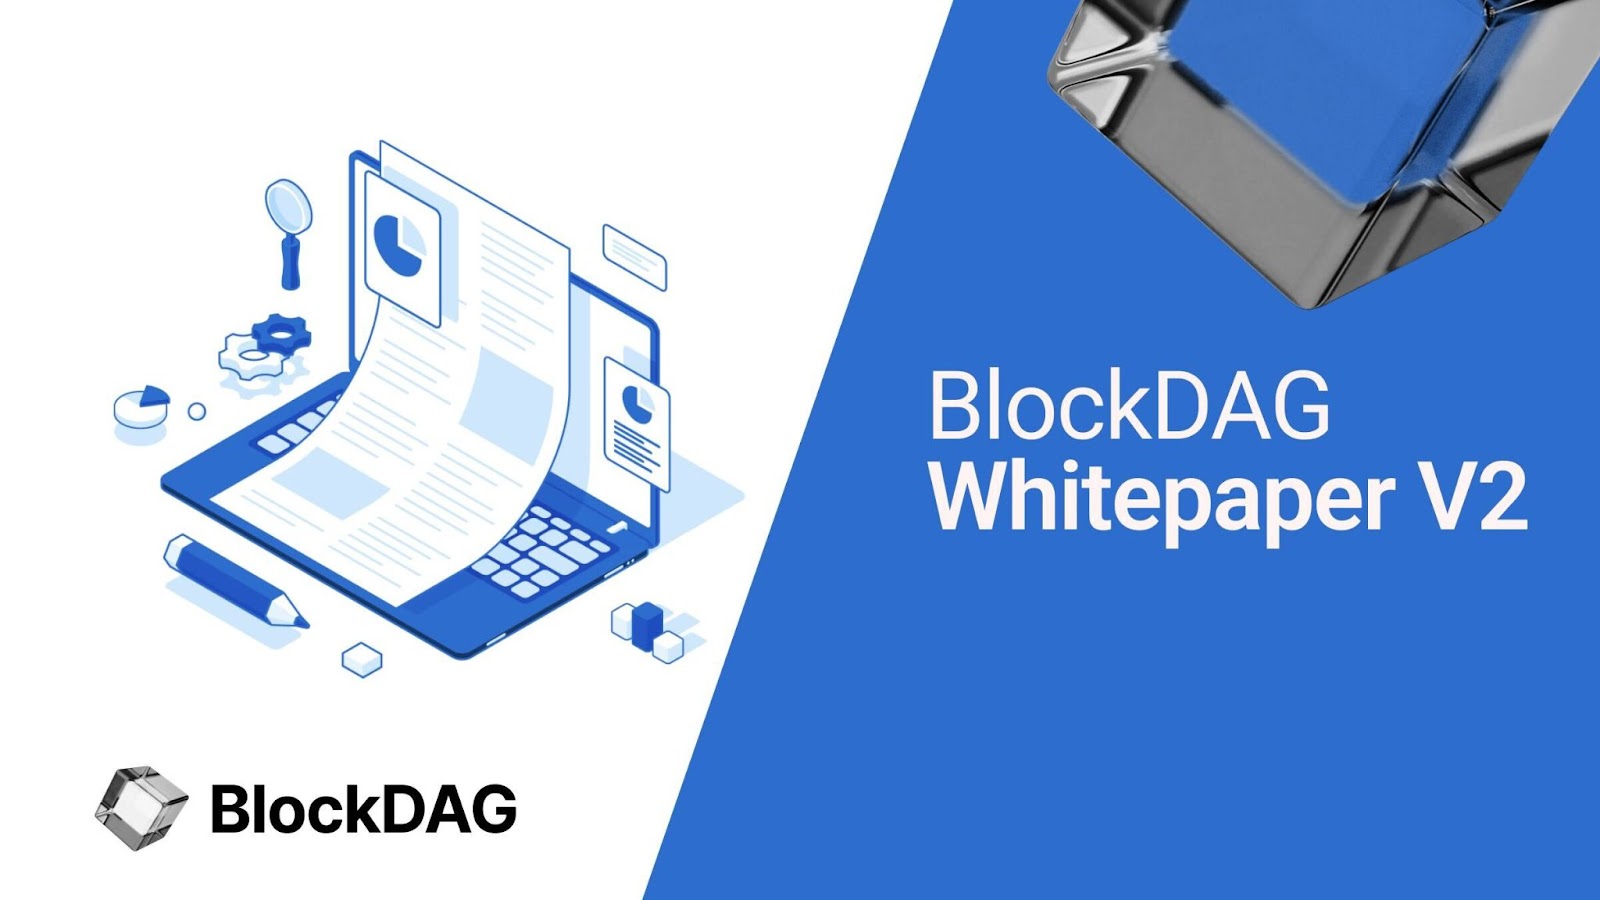 BlockDAG: Pioneering Change with $17M in Presale